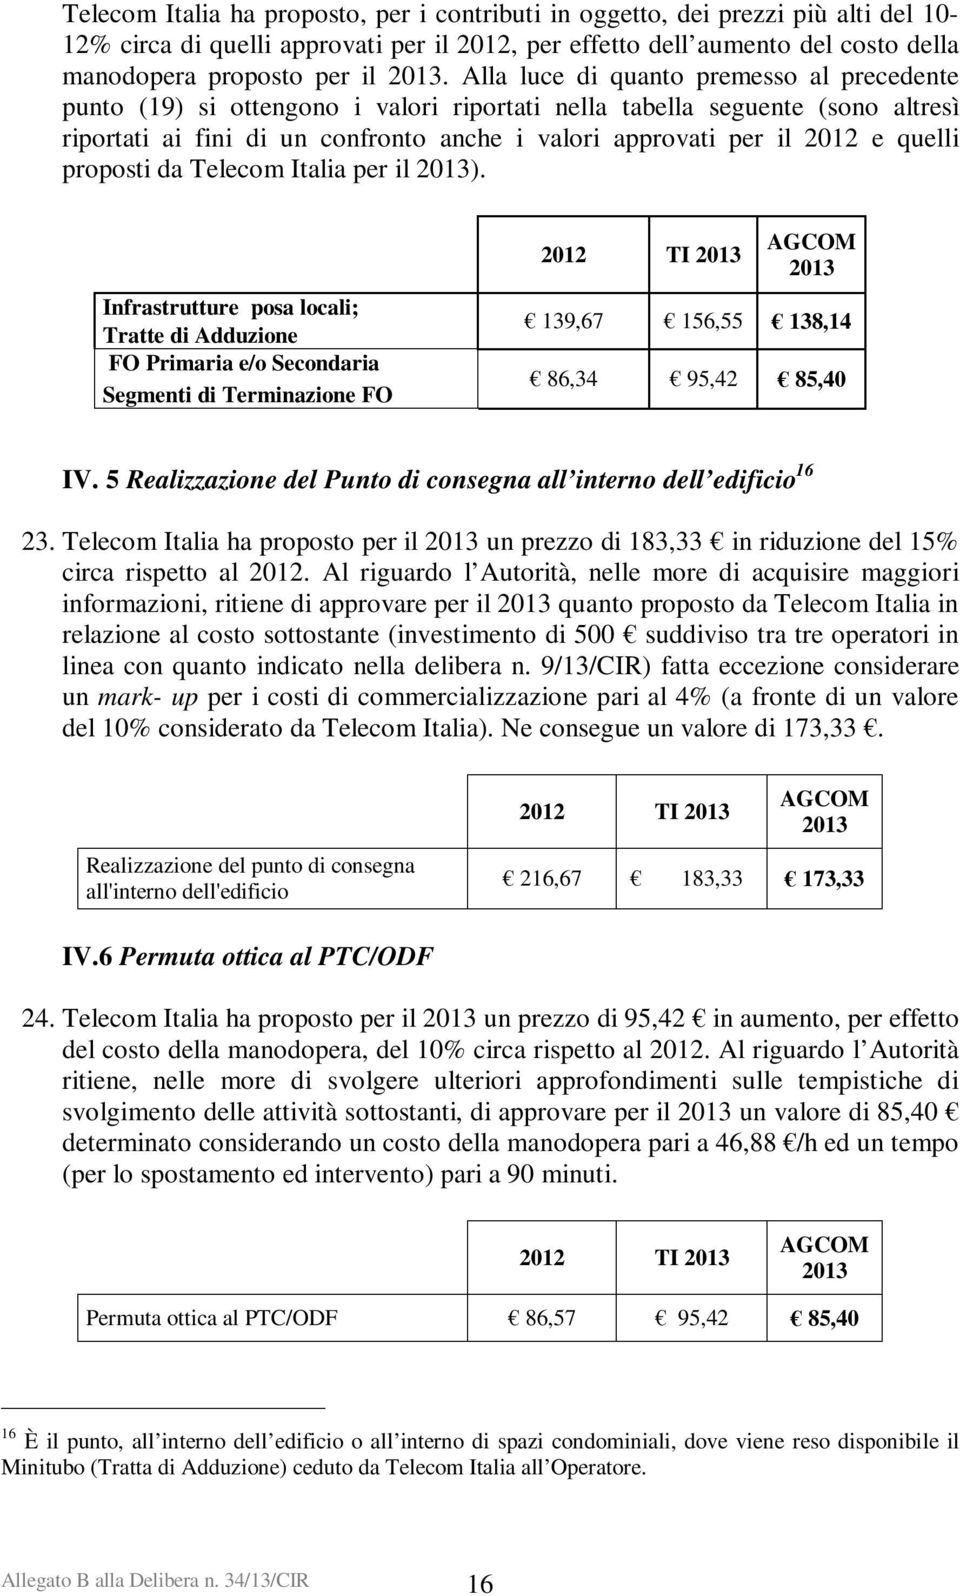 quelli proposti da Telecom Italia per il 2013).